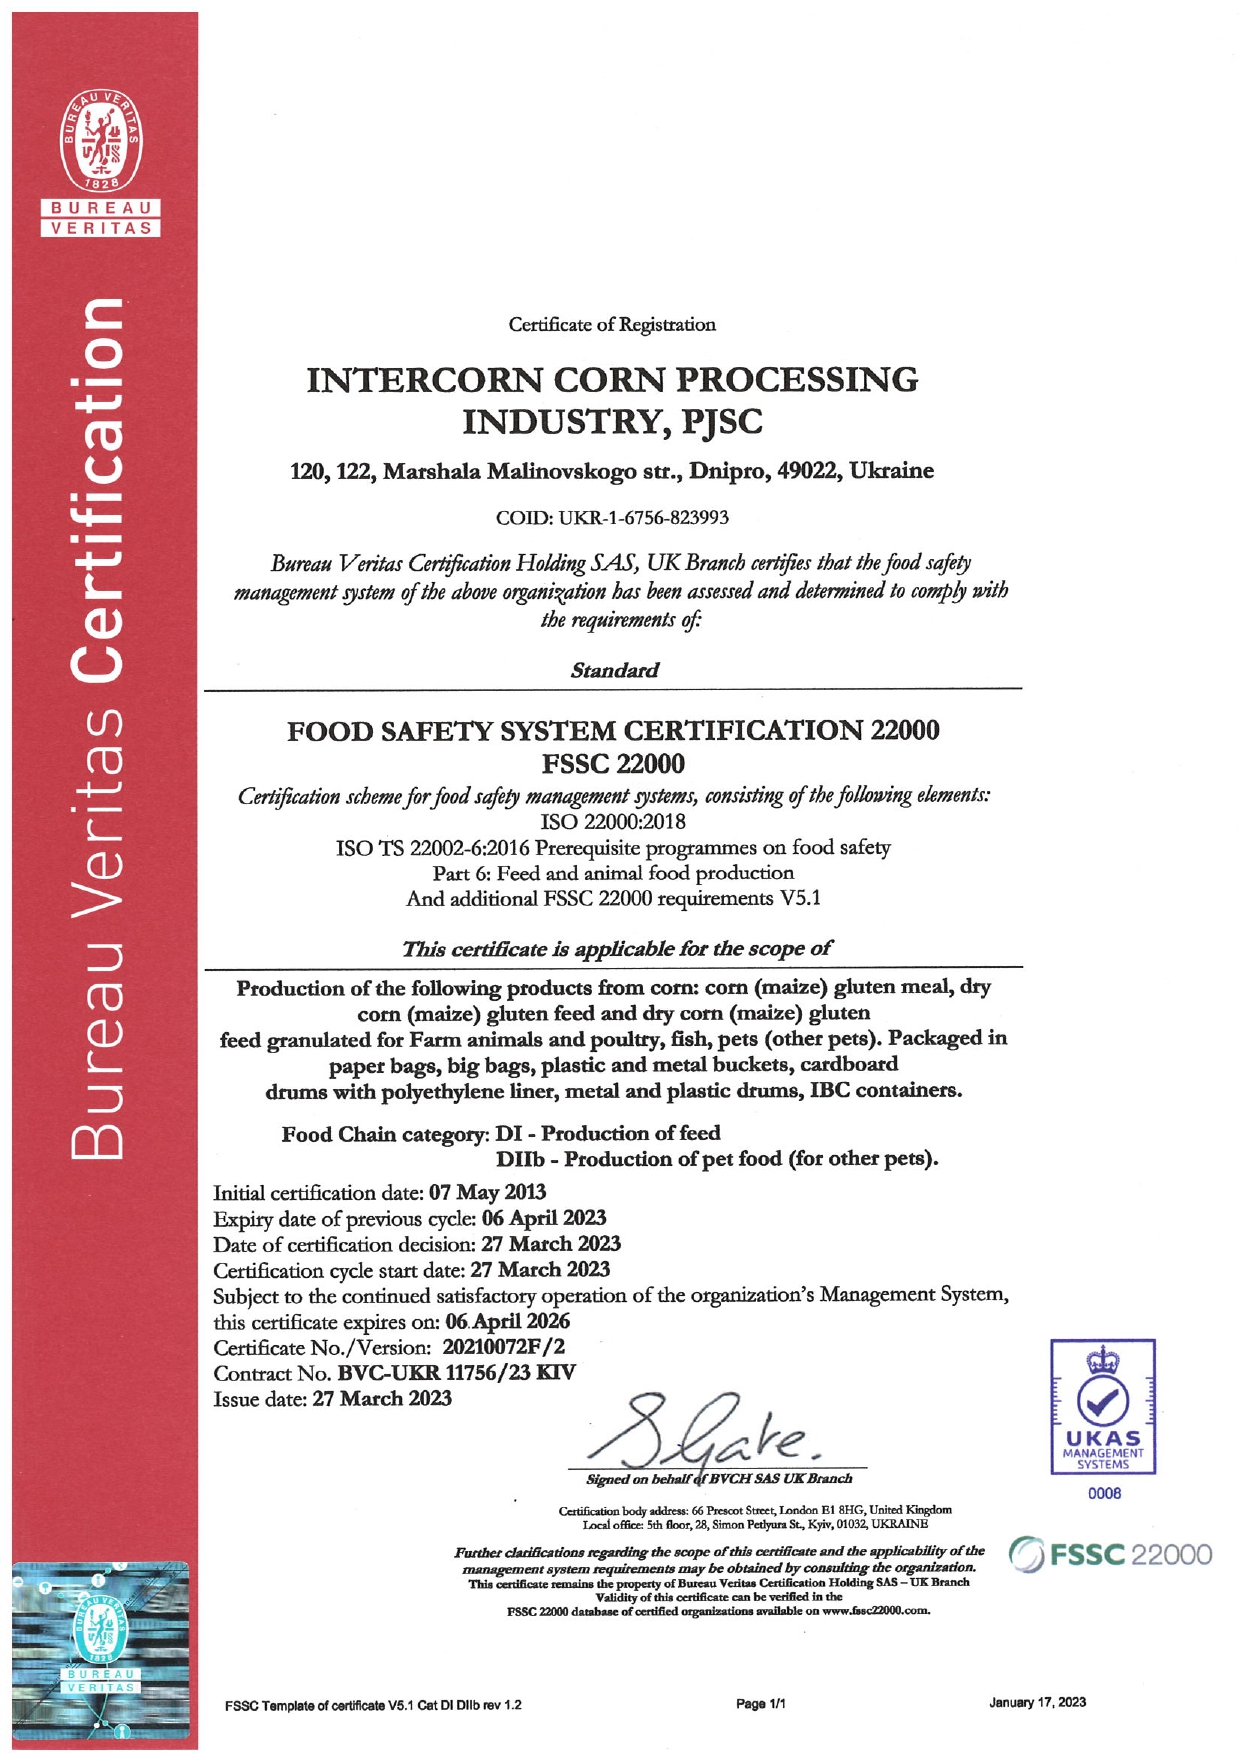 FSSC 22000 Intercorn Corn Processing Industry, PJSC